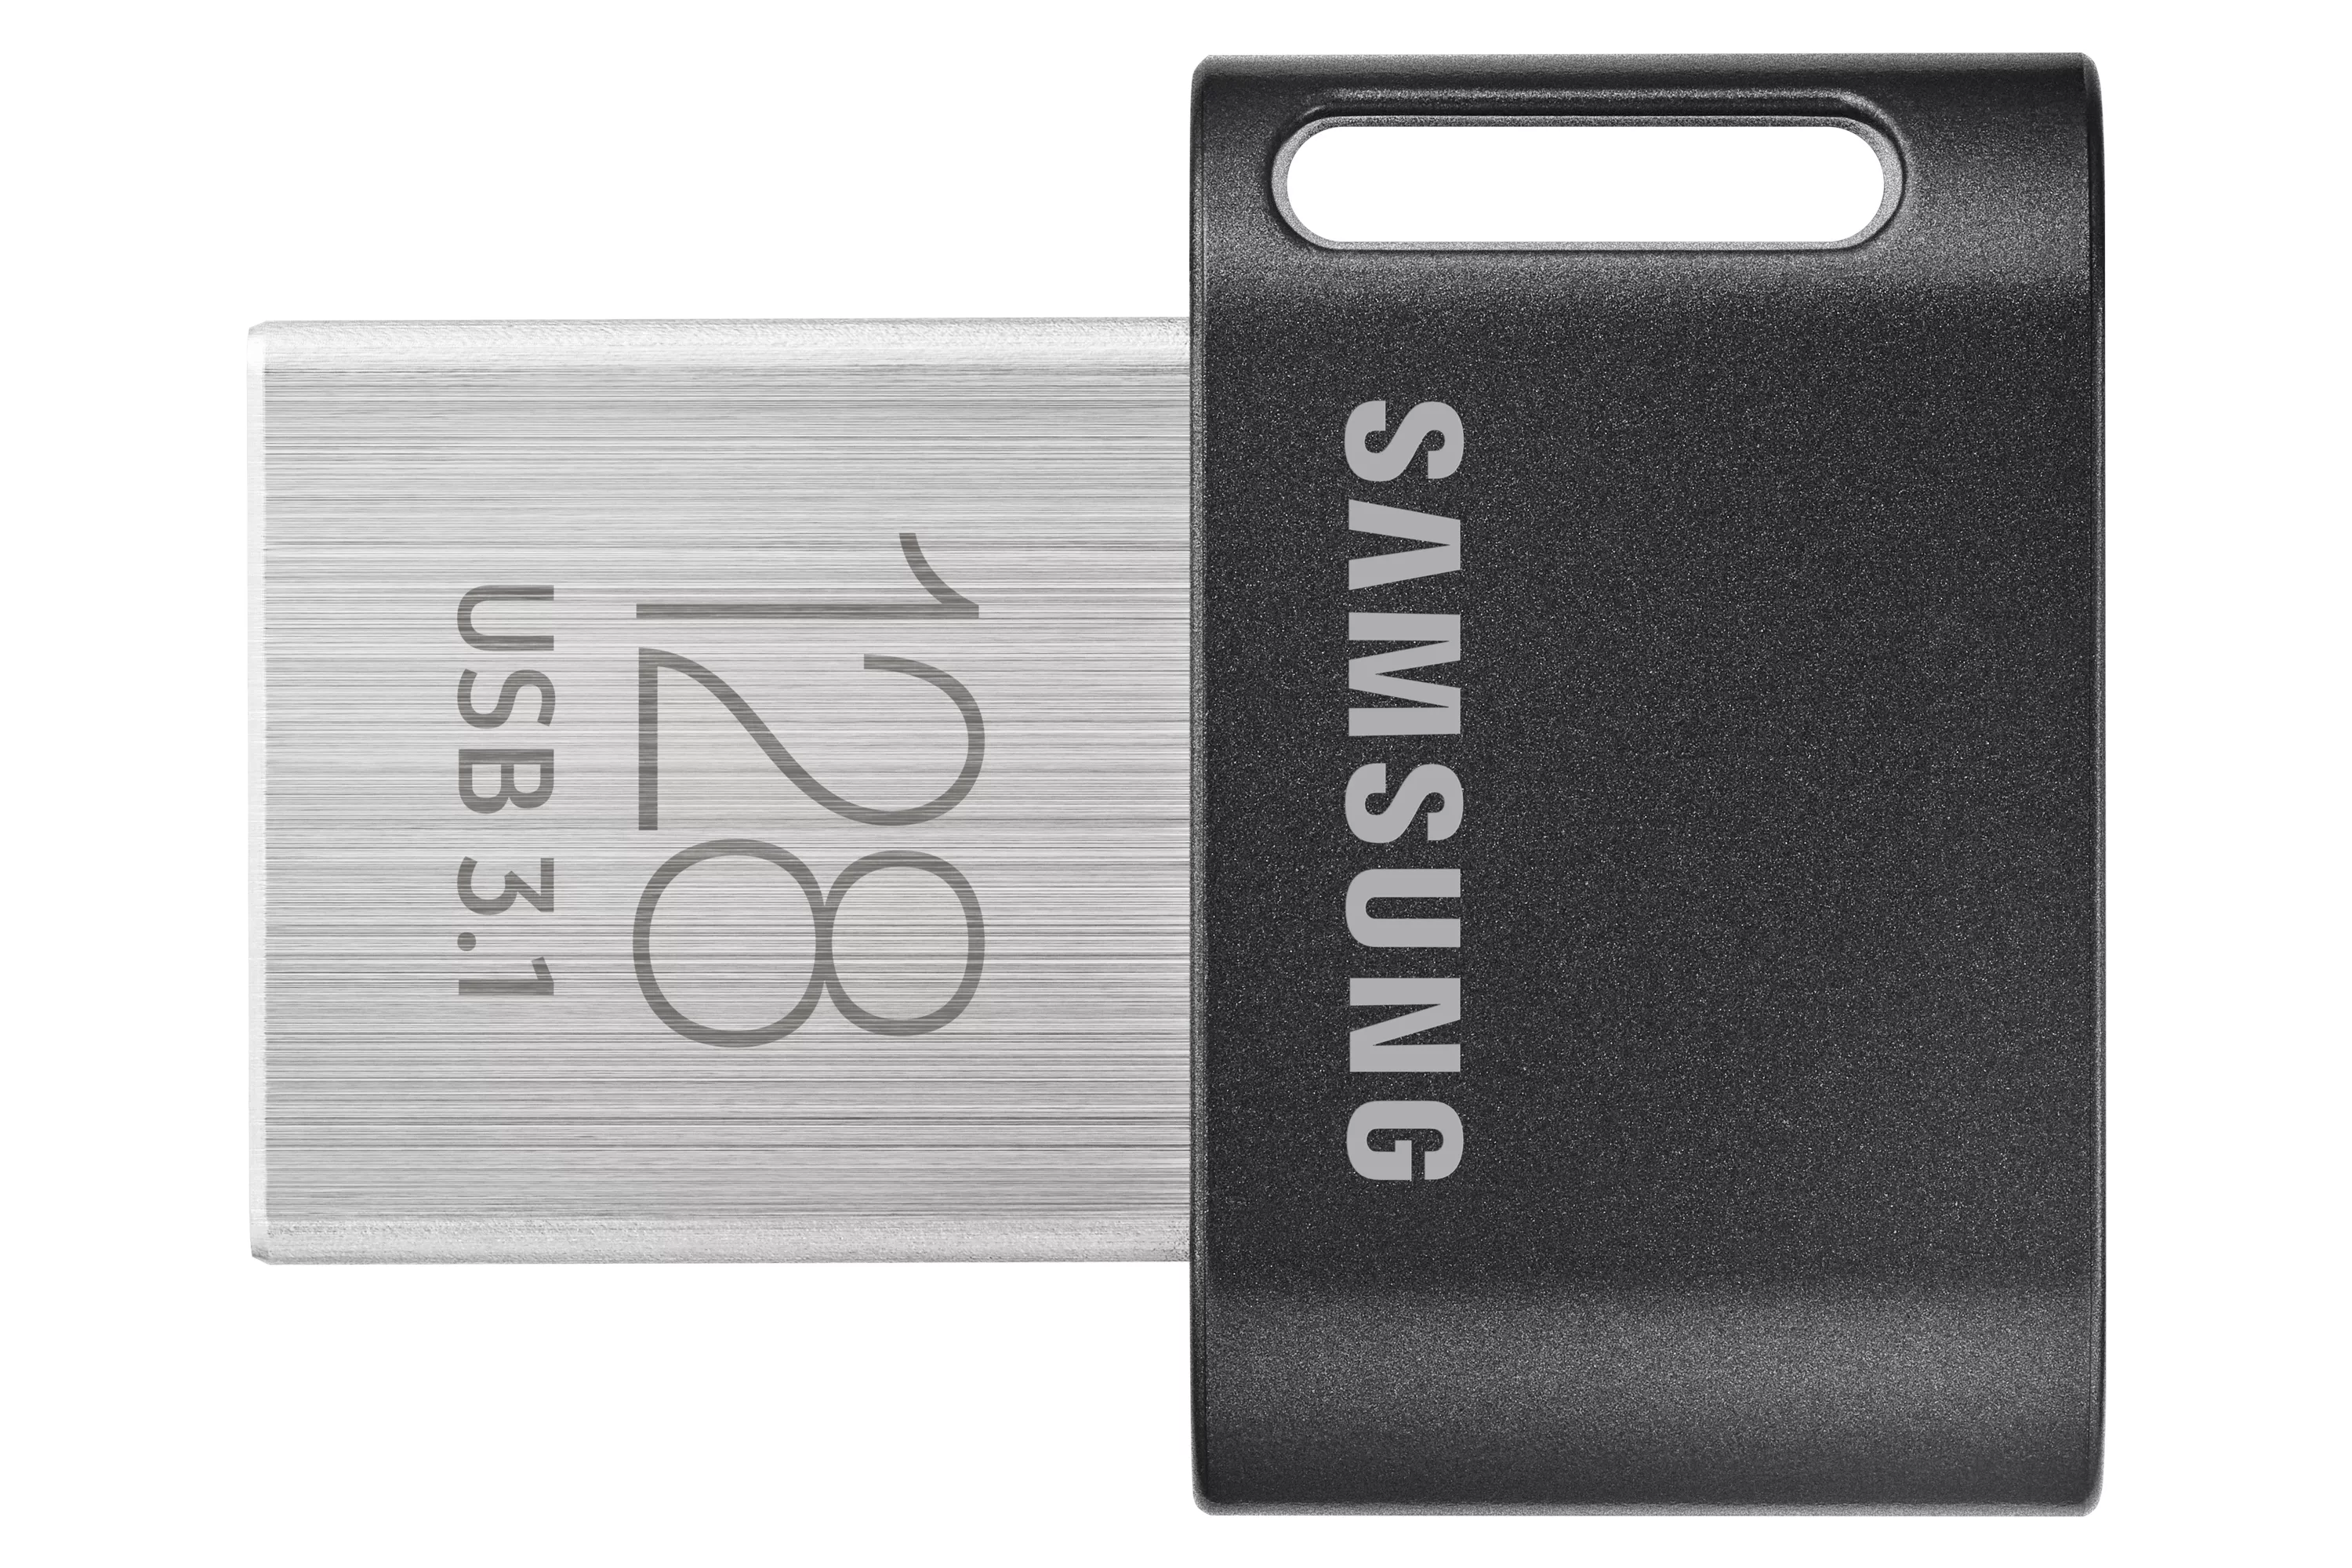 Achat SAMSUNG FIT PLUS 128Go USB 3.1 et autres produits de la marque Samsung